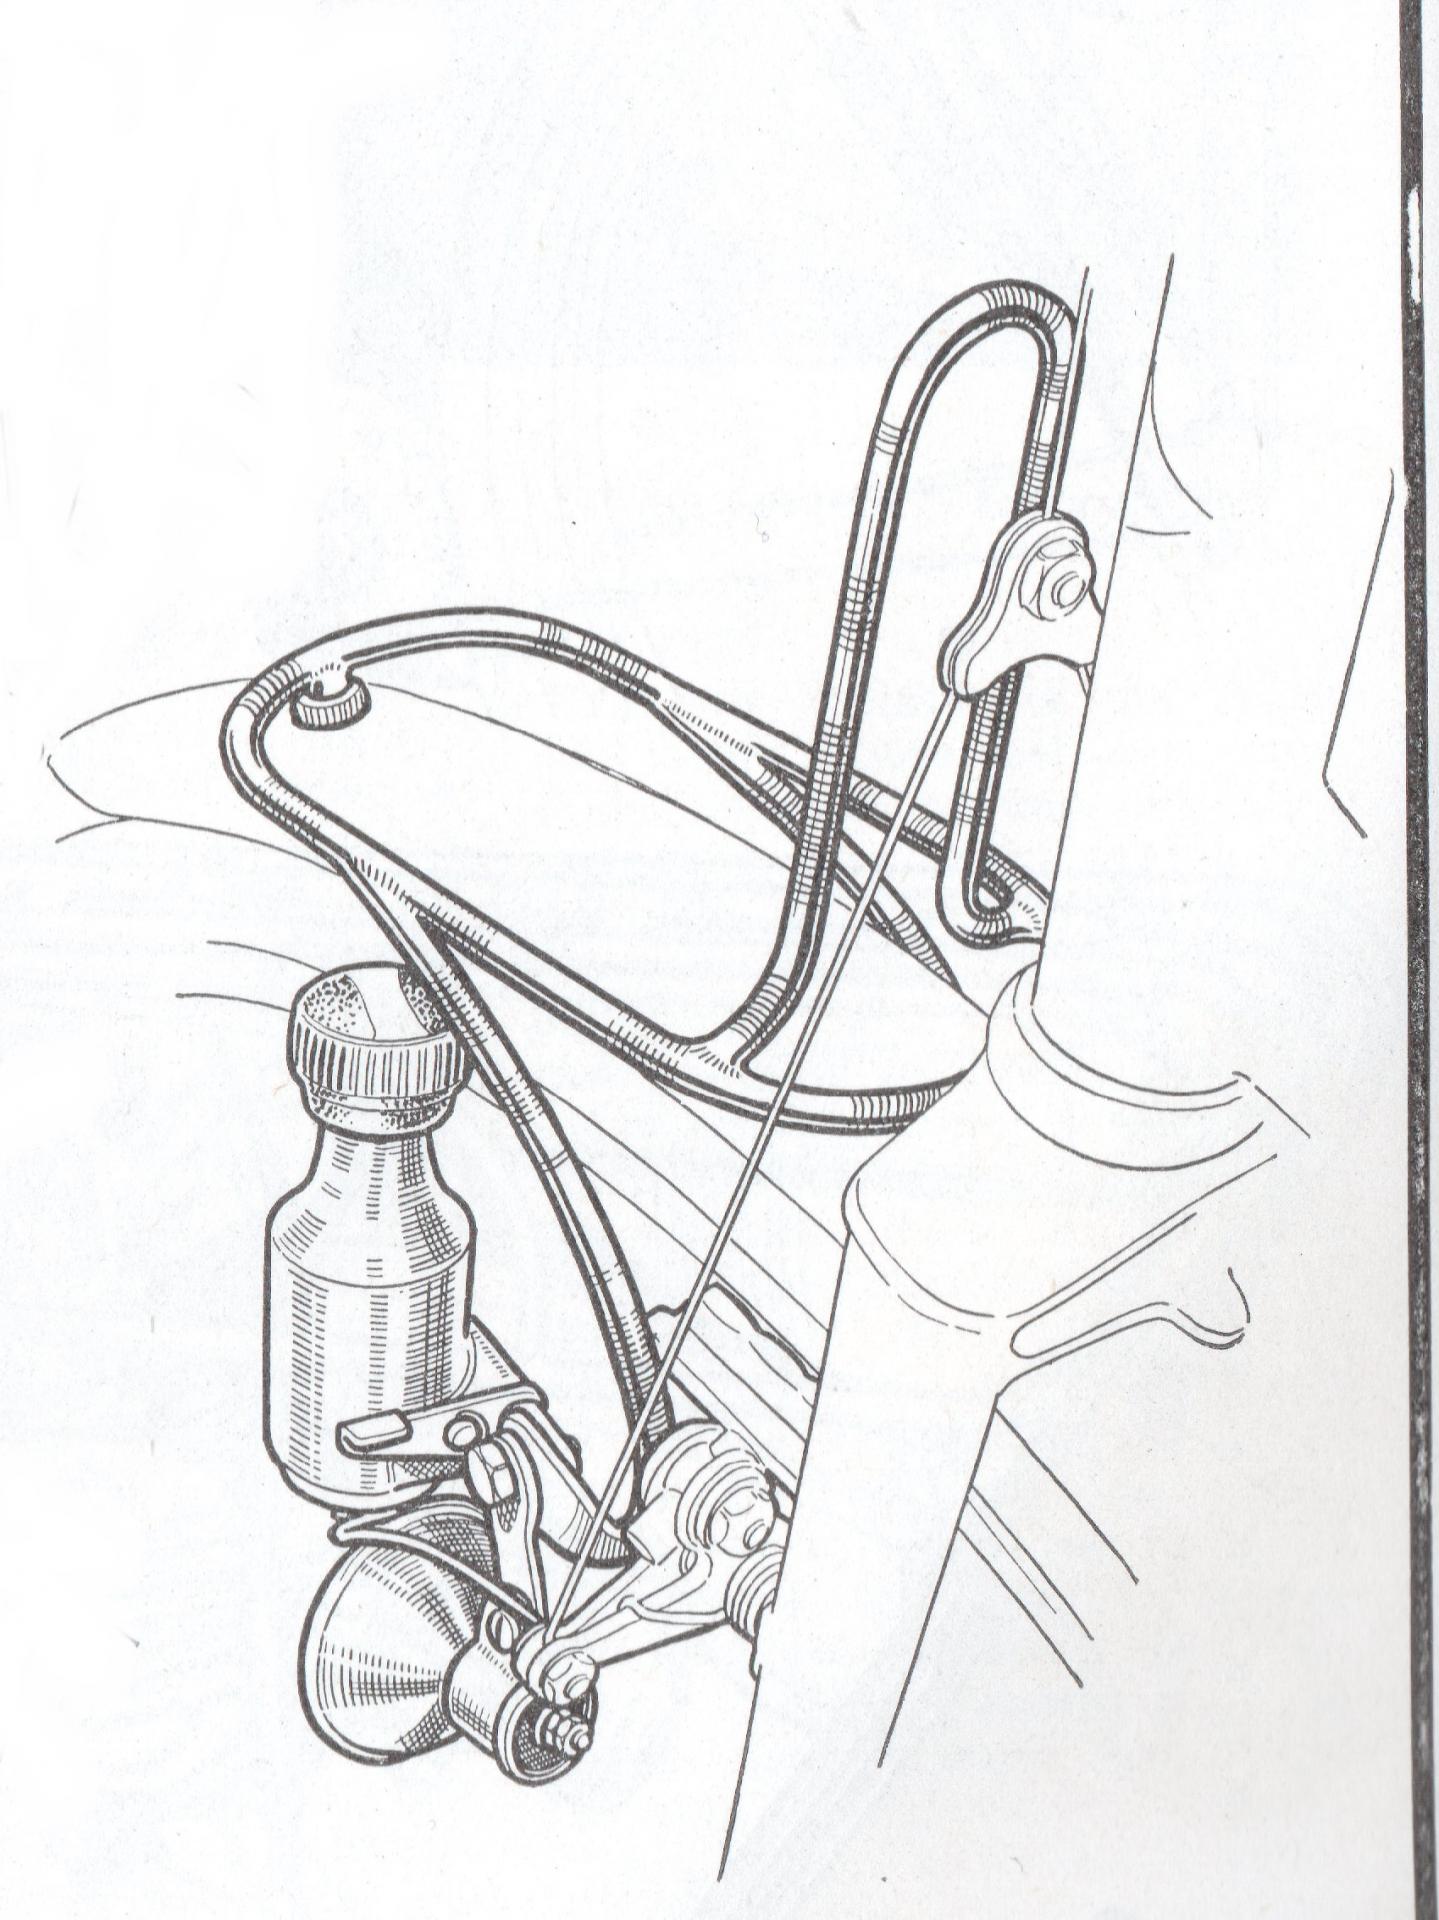 Revue le cycliste 1950 n 10 dynamo soubitez sur porte sacoche hugonnier routens dessin d rebour